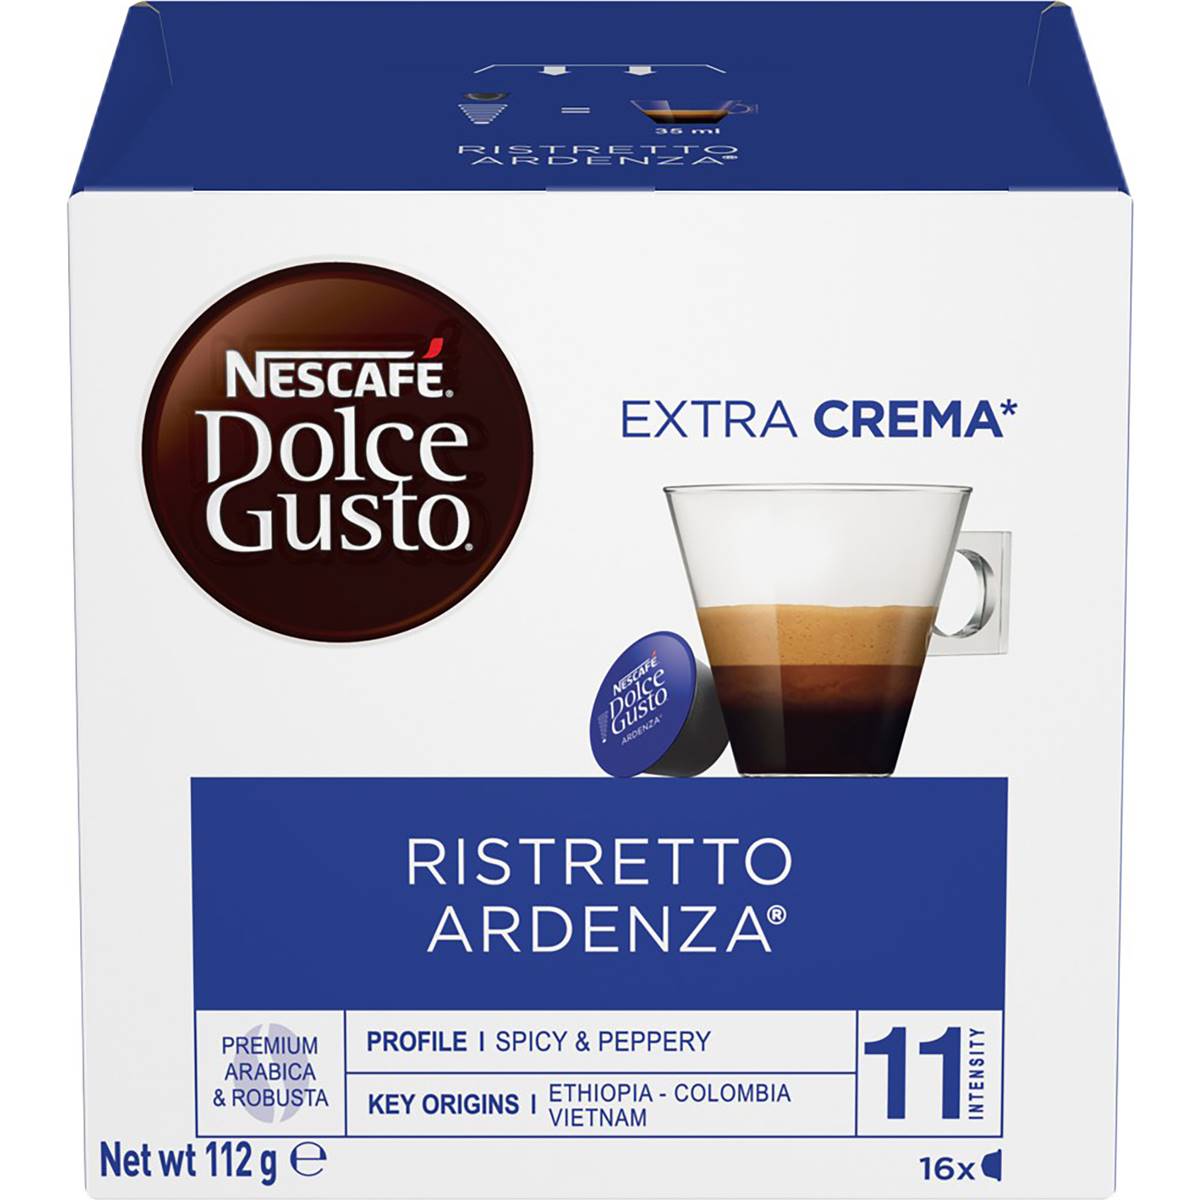 Nescafe Dolce Gusto Coffee Capsules Ristretto Ardenza